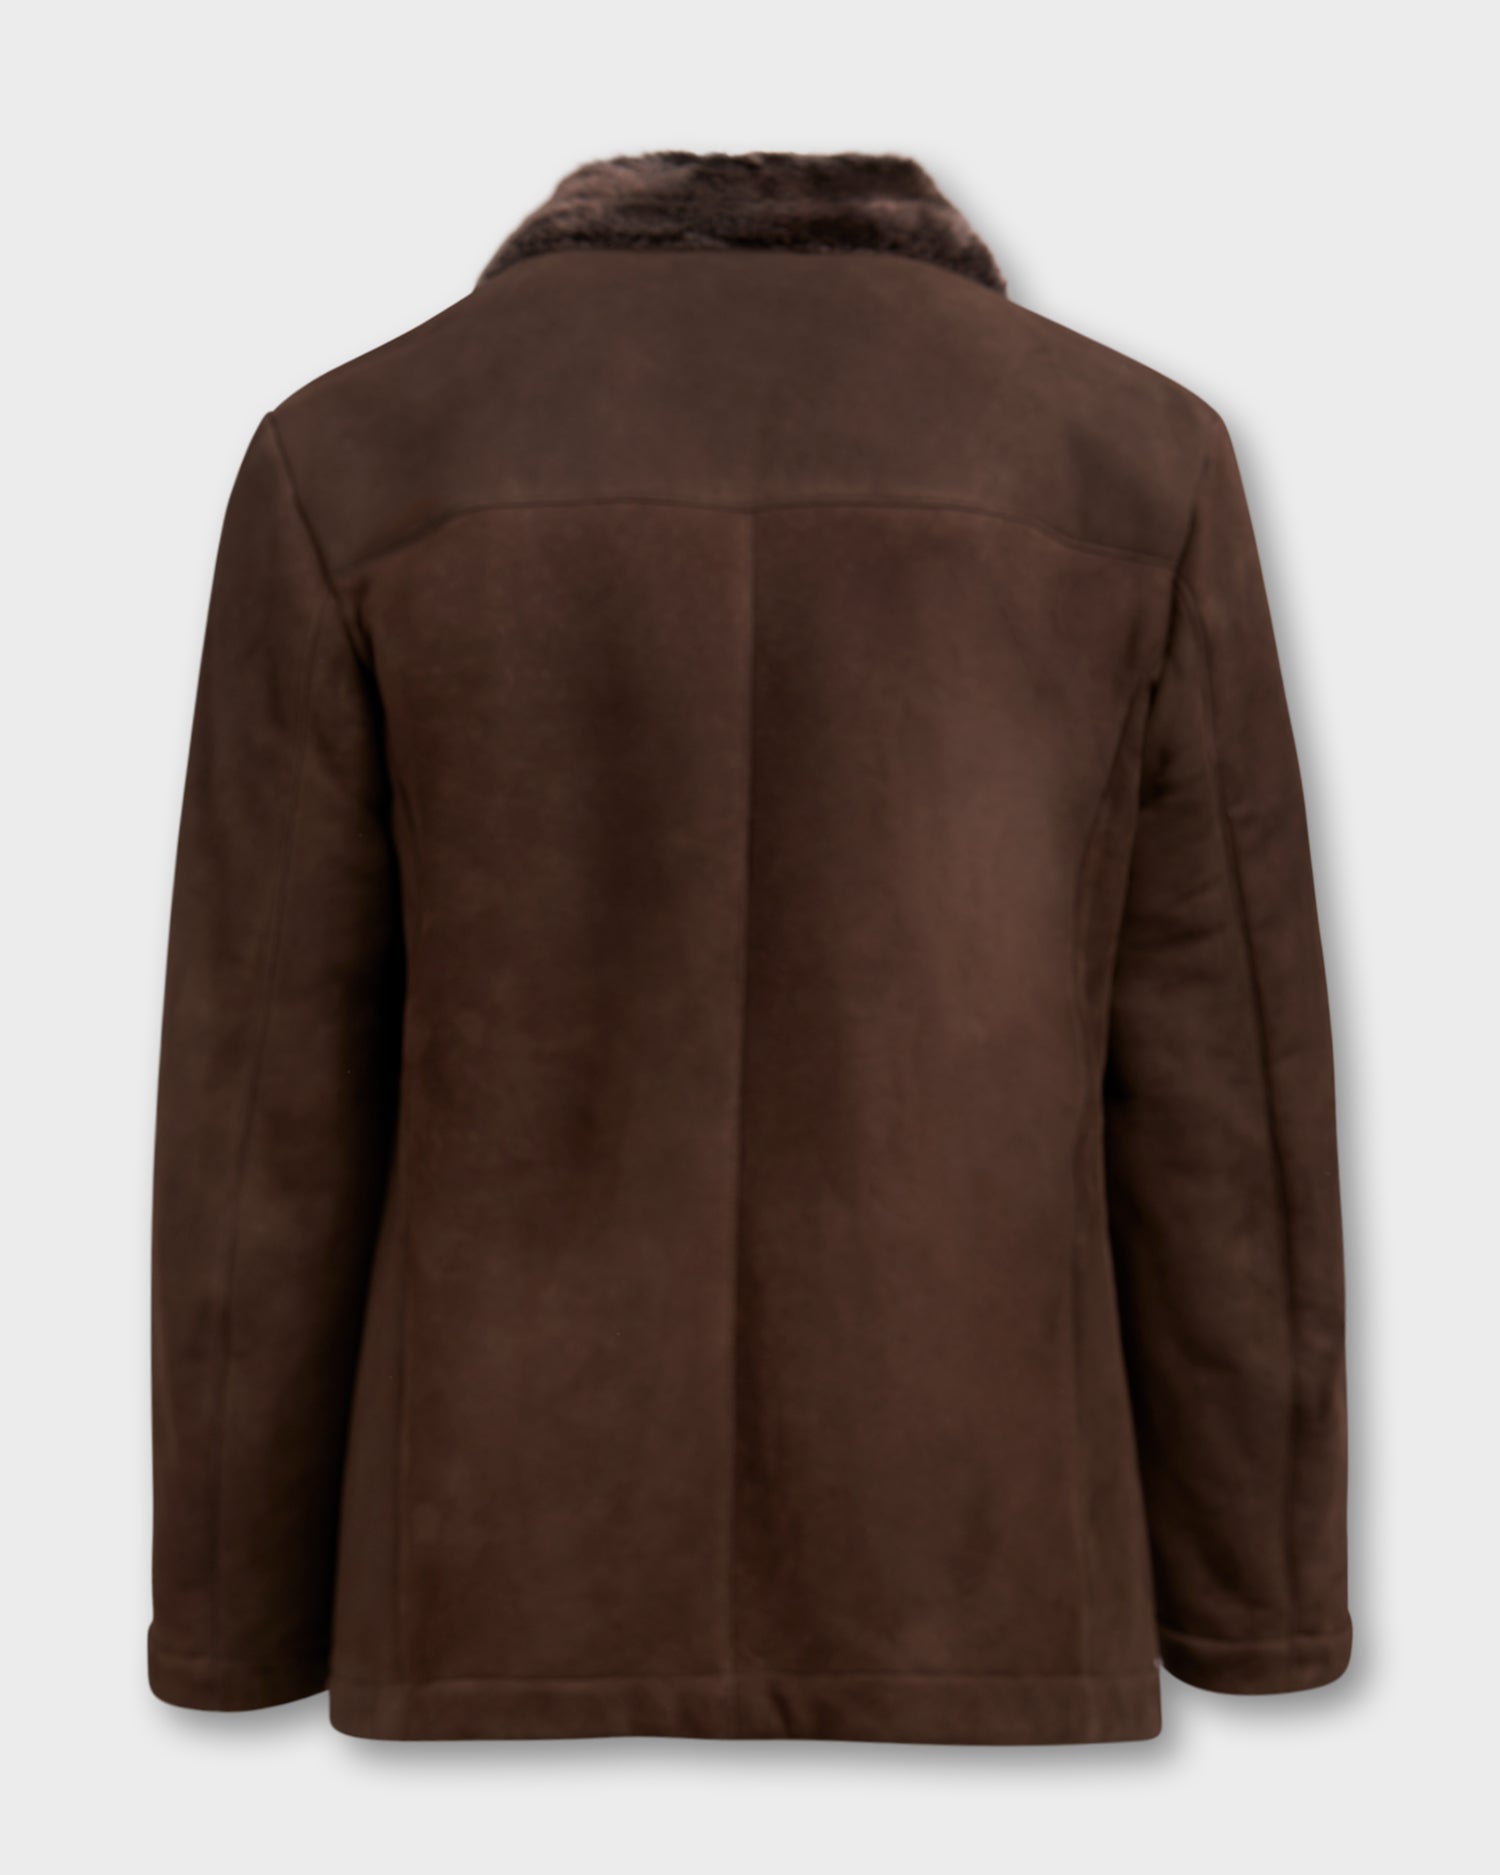 Exclusive Brown Suede Lambskin Fur Lined Coat